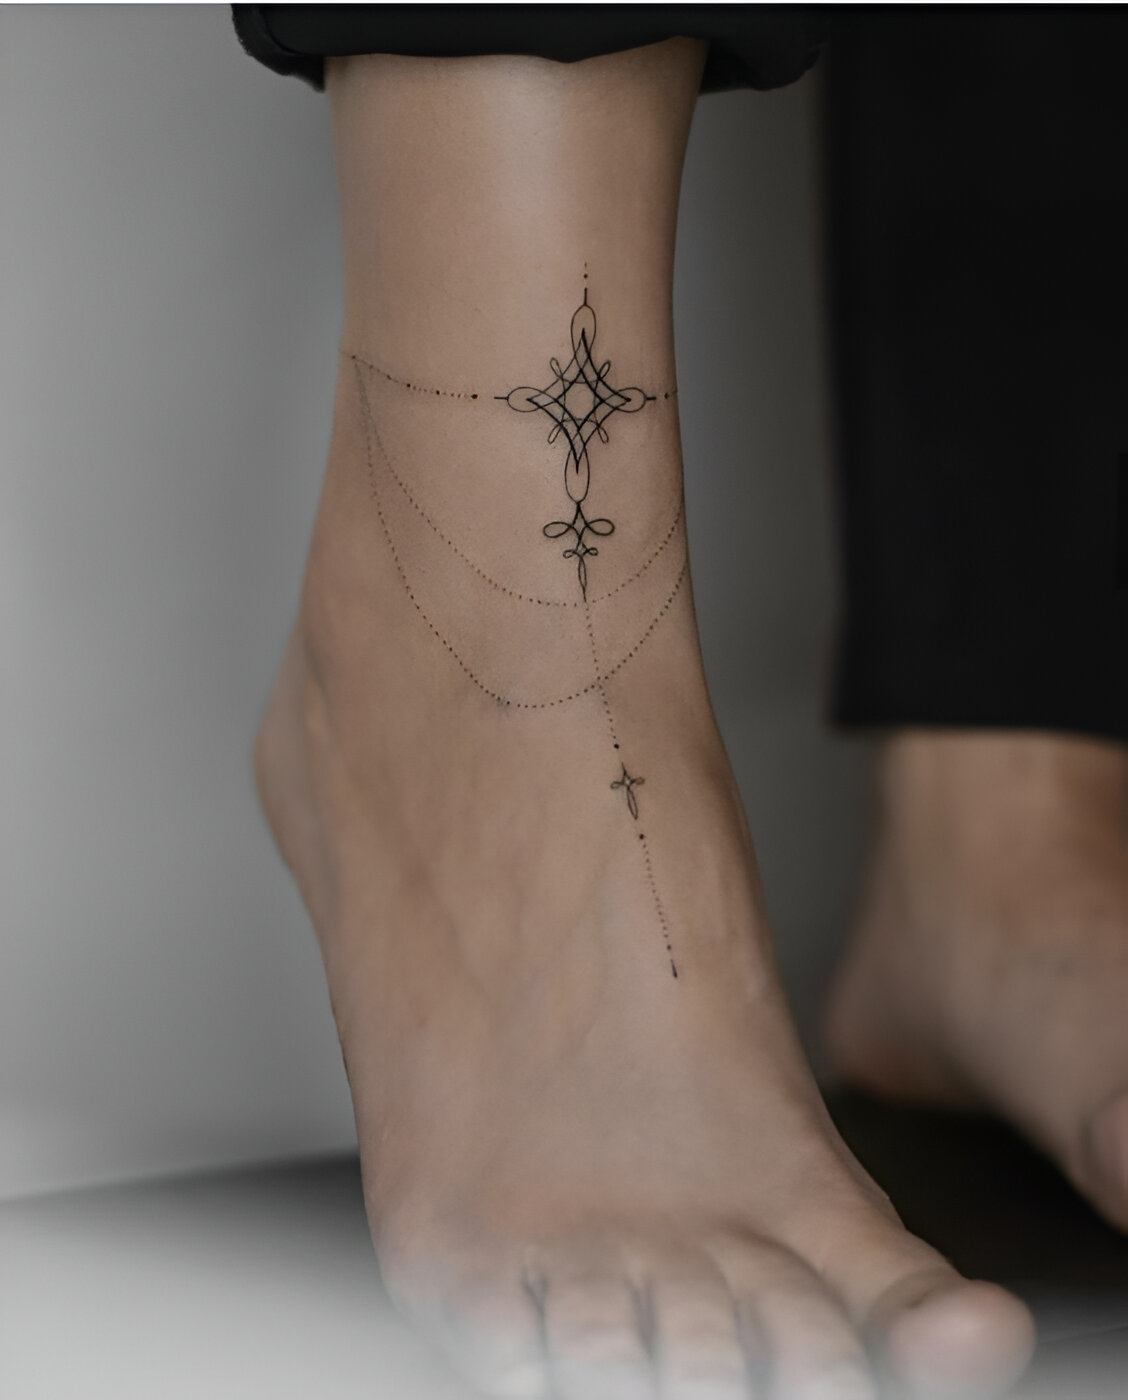 Ankle Bracelet Tattoos With Symbol Design